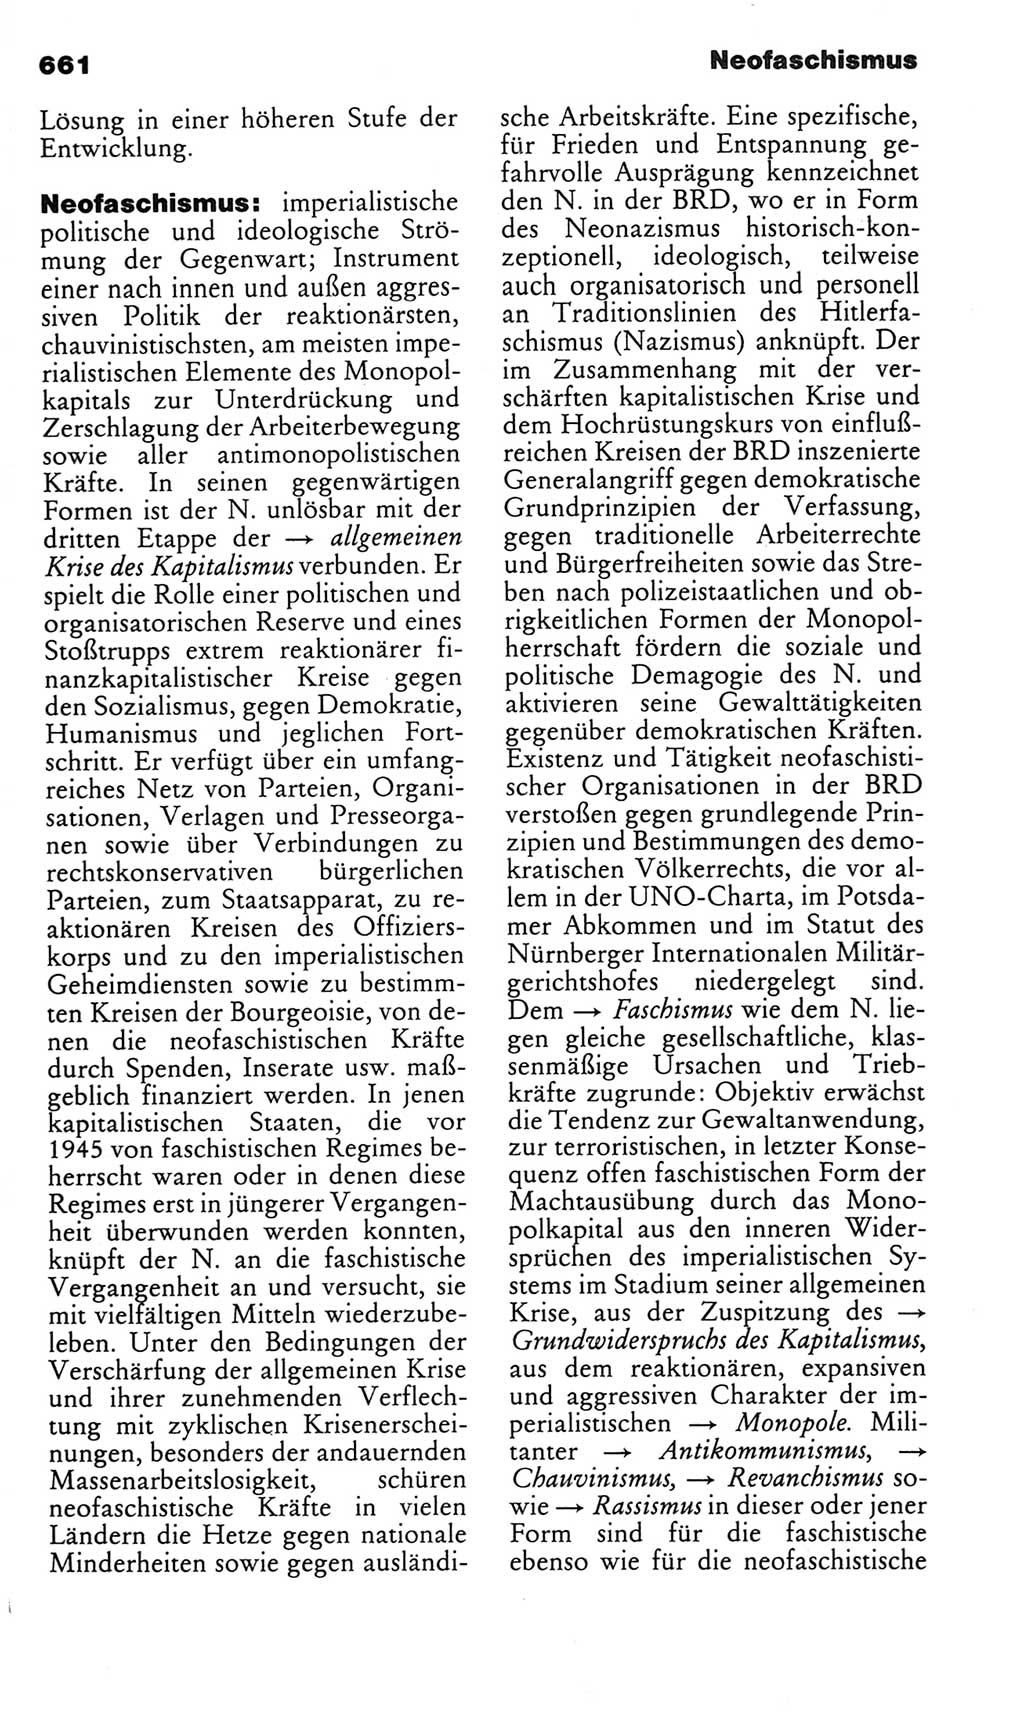 Kleines politisches Wörterbuch [Deutsche Demokratische Republik (DDR)] 1983, Seite 661 (Kl. pol. Wb. DDR 1983, S. 661)